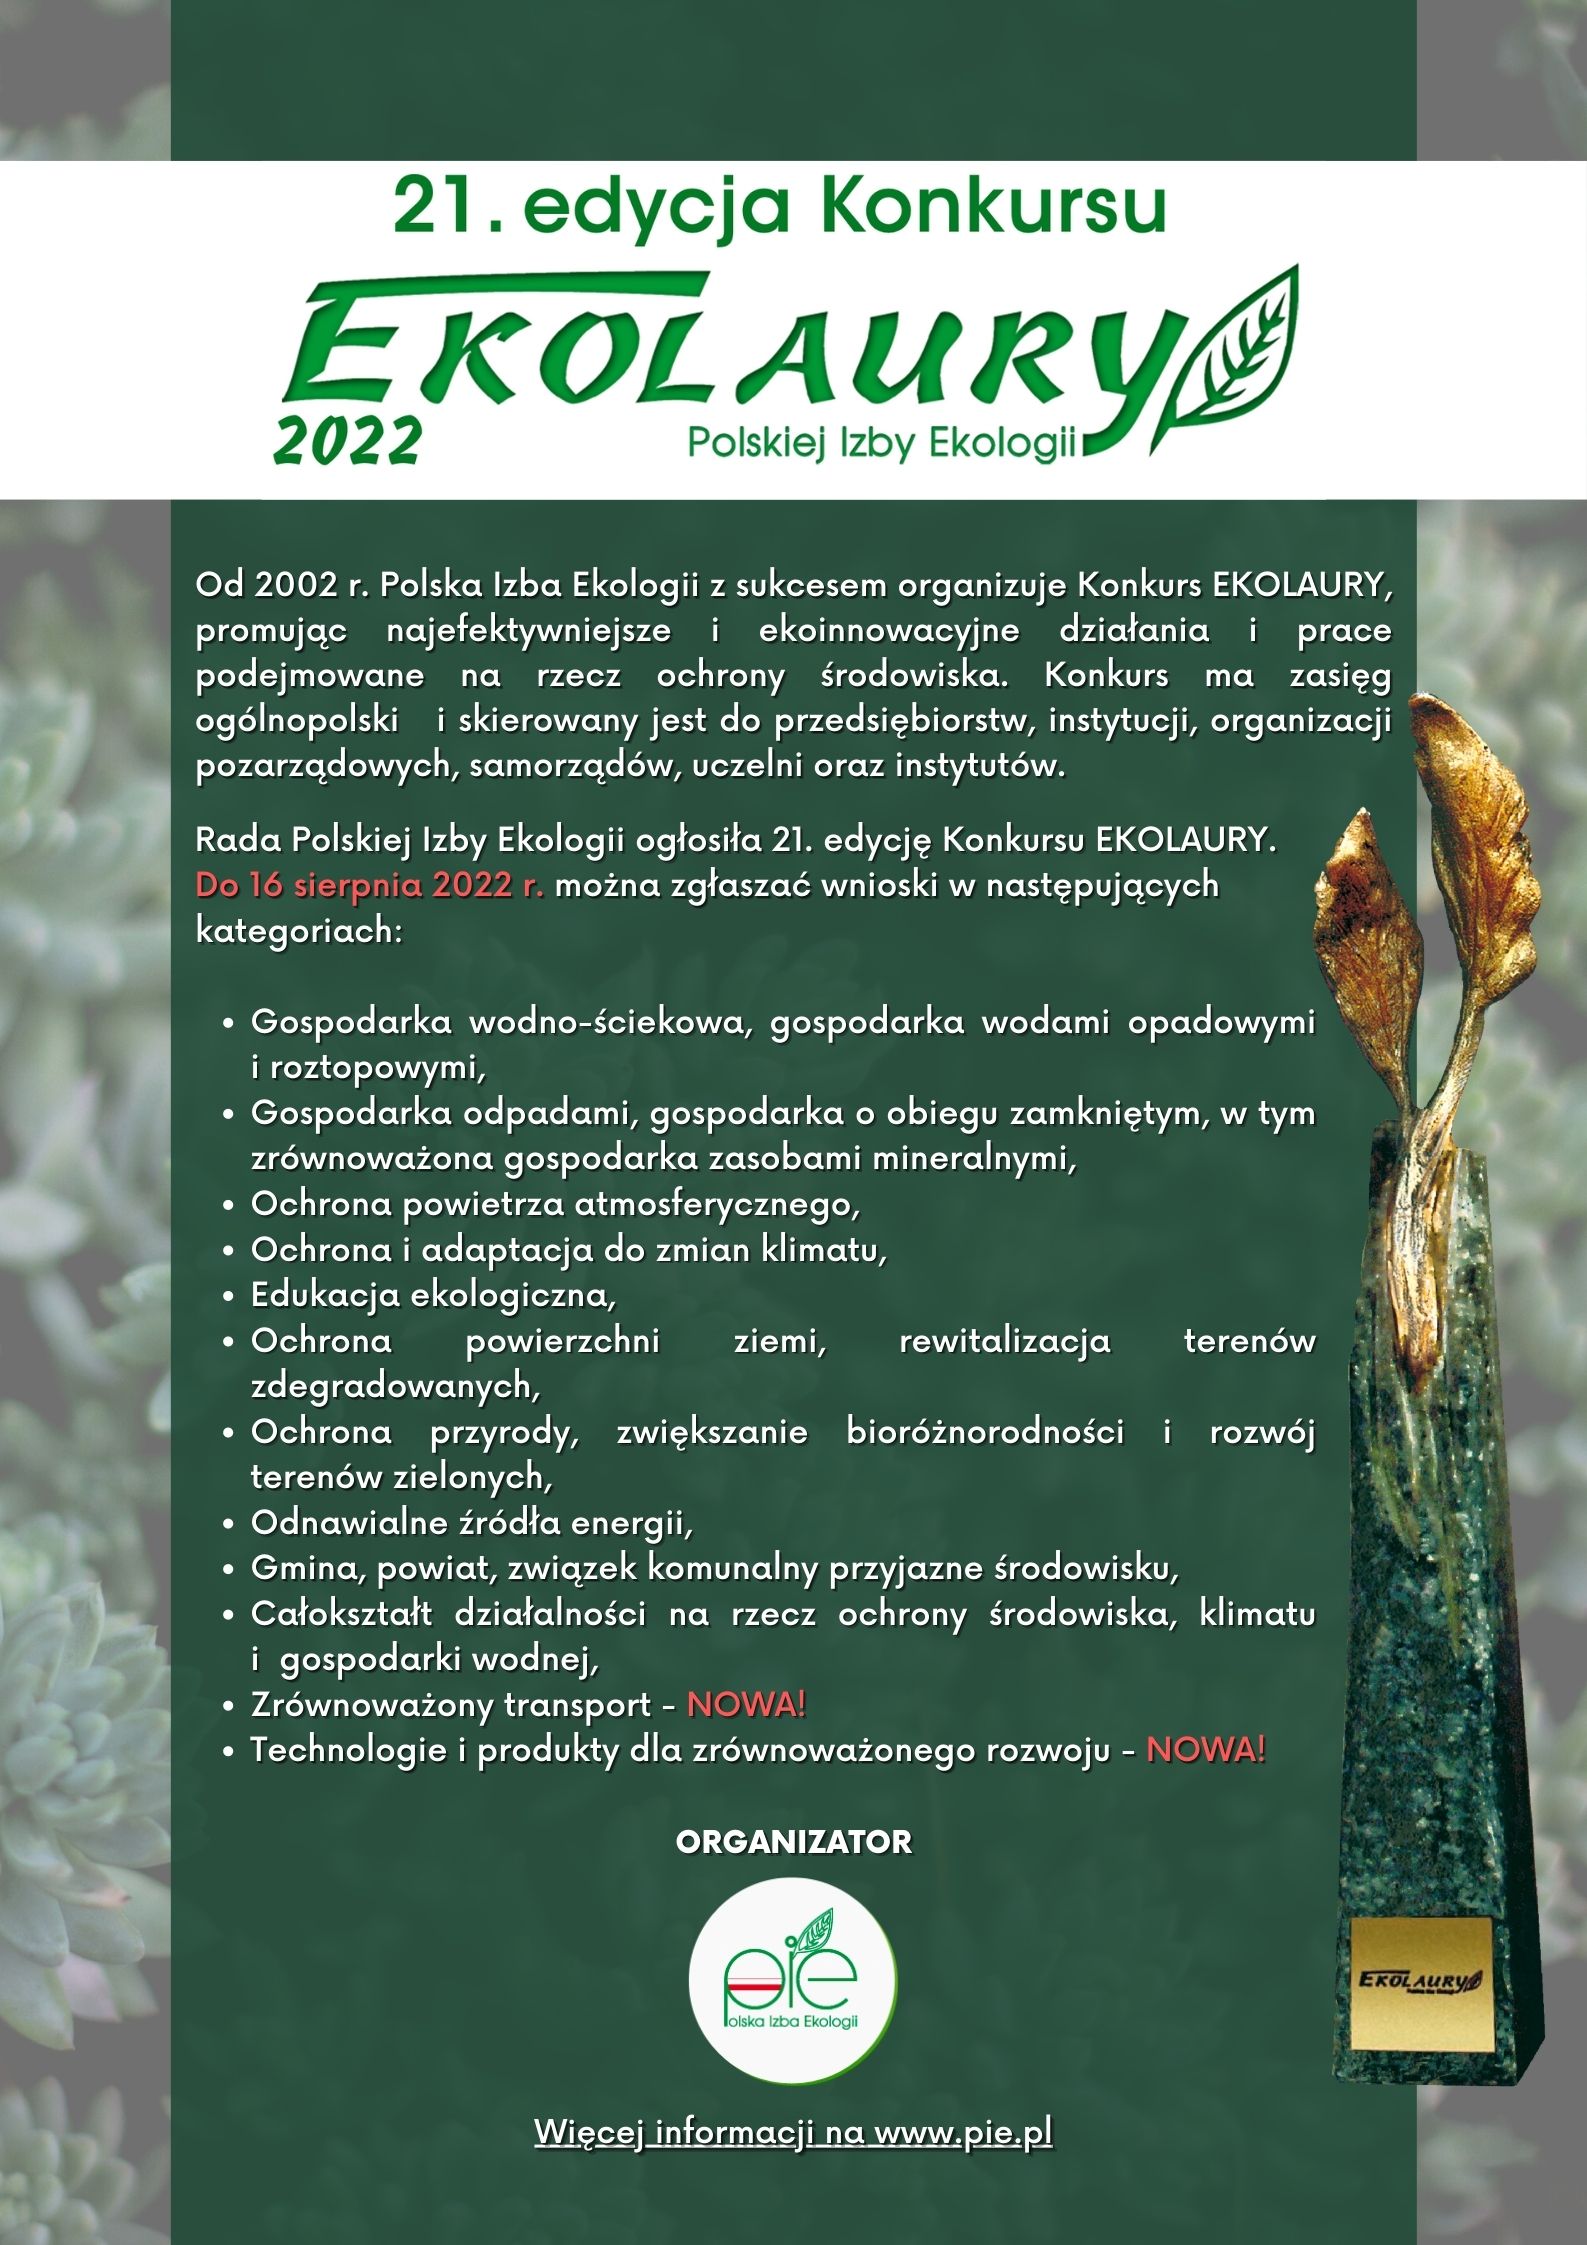 Zdjęcie przedstawia plakat informacyjny dotyczący 21 edycji Konkursu "Ekolaury Polskiej Izby Ekologi 2022"